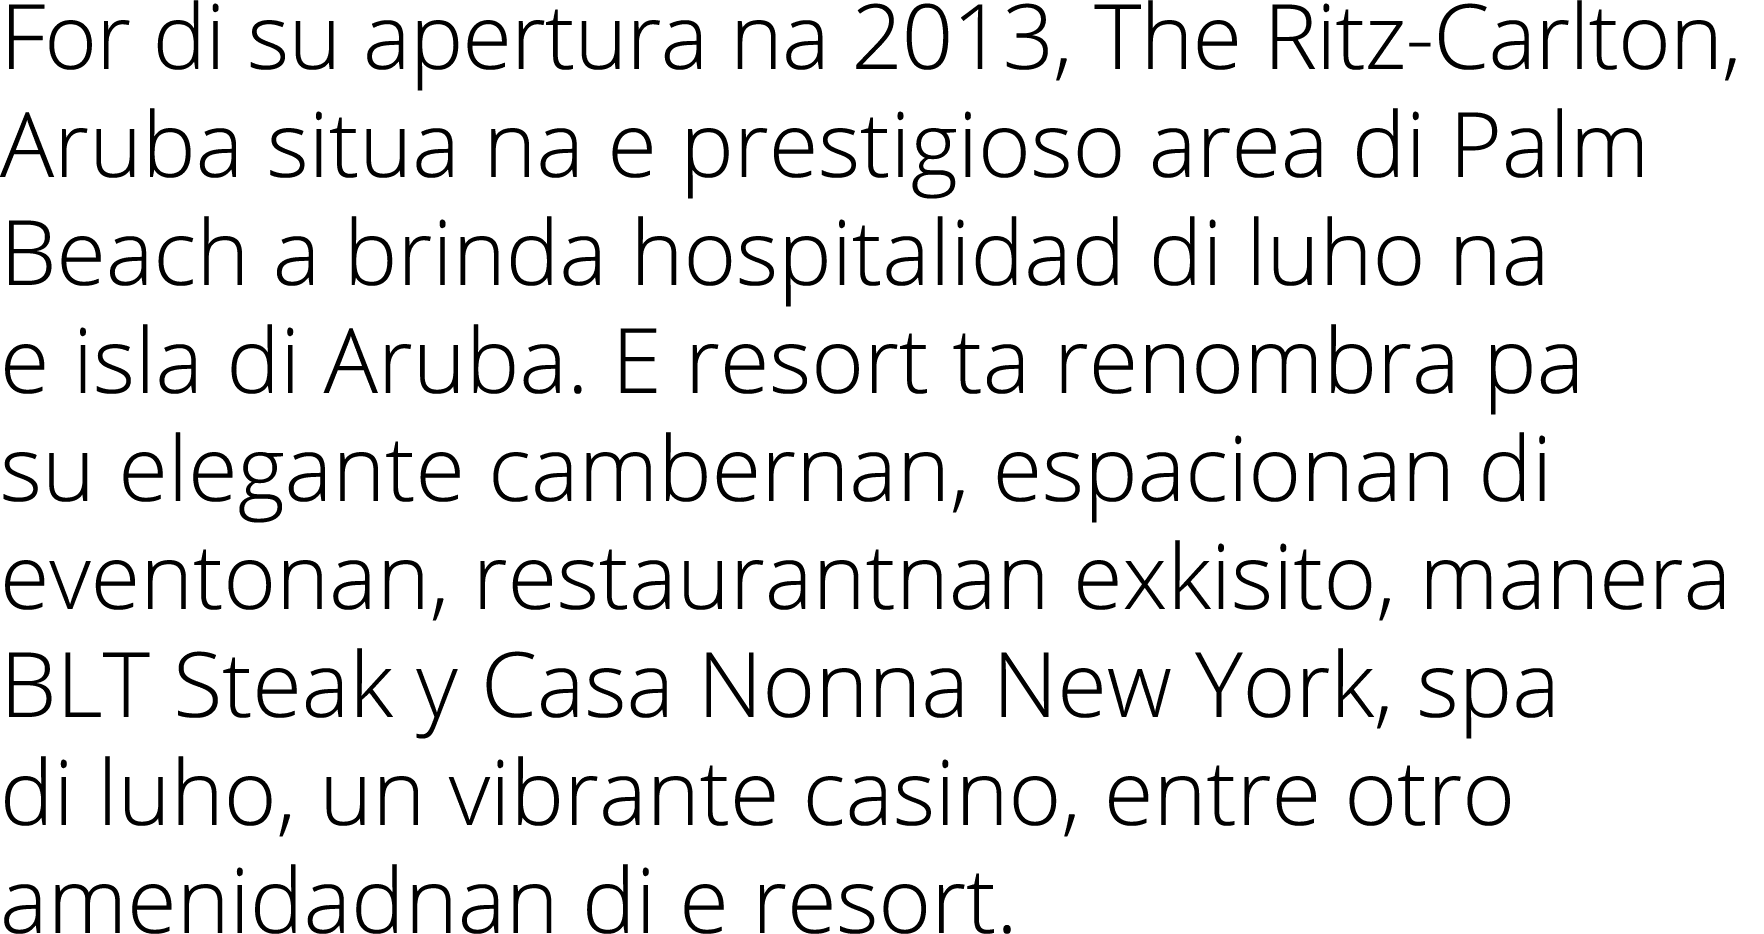 For di su apertura na 2013, The Ritz Carlton, Aruba situa na e prestigioso area di Palm Beach a brinda hospitalidad d...